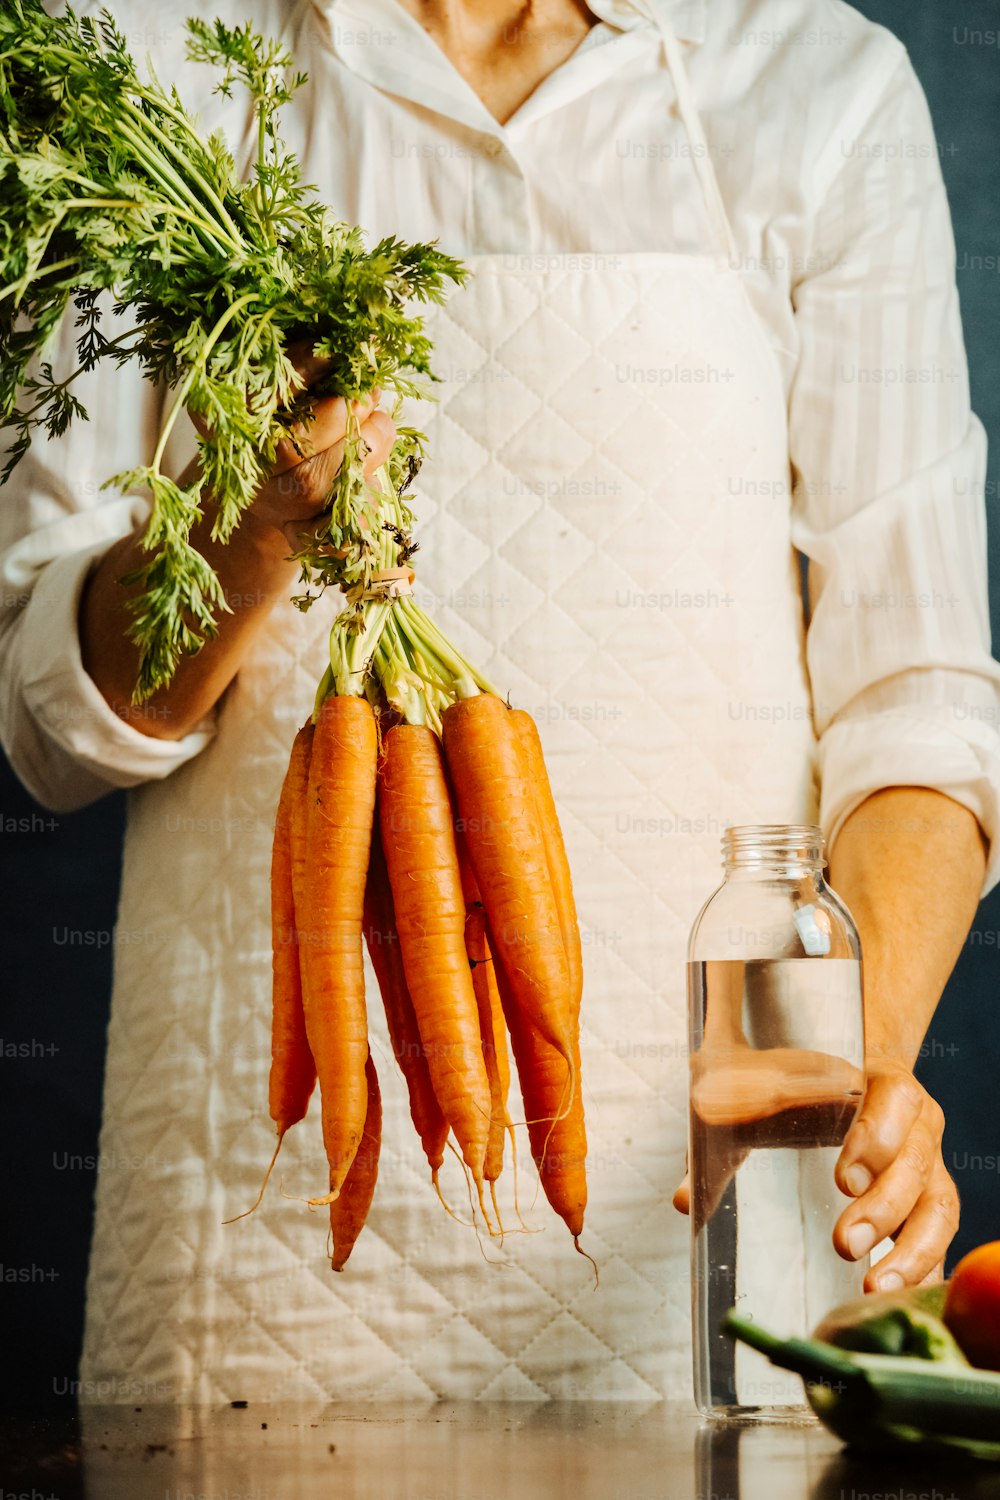 una persona sosteniendo un montón de zanahorias en sus manos